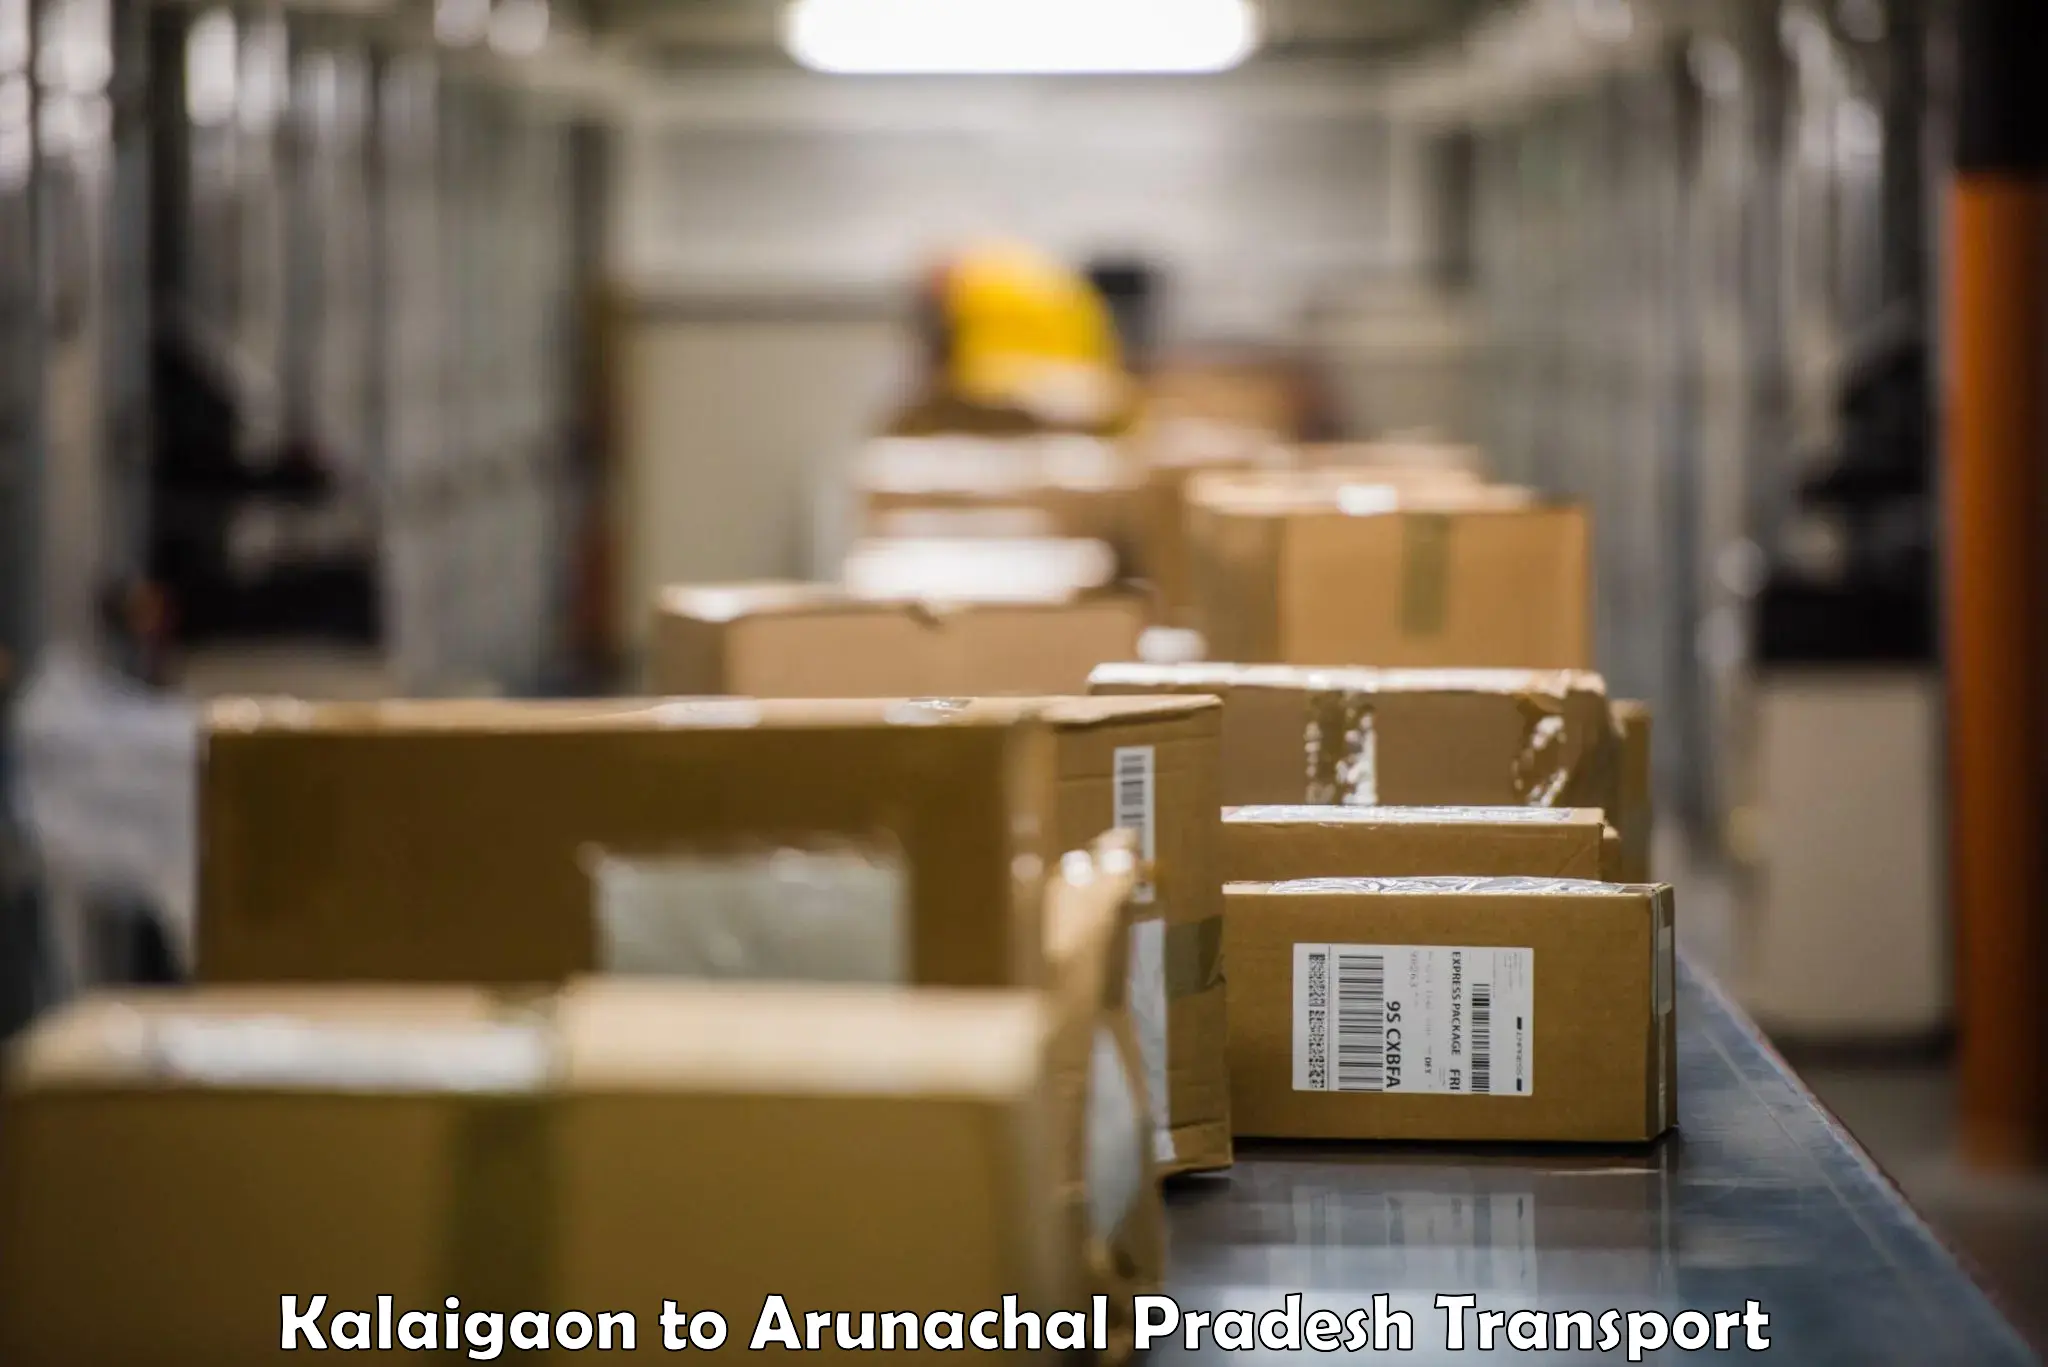 Air freight transport services Kalaigaon to Itanagar